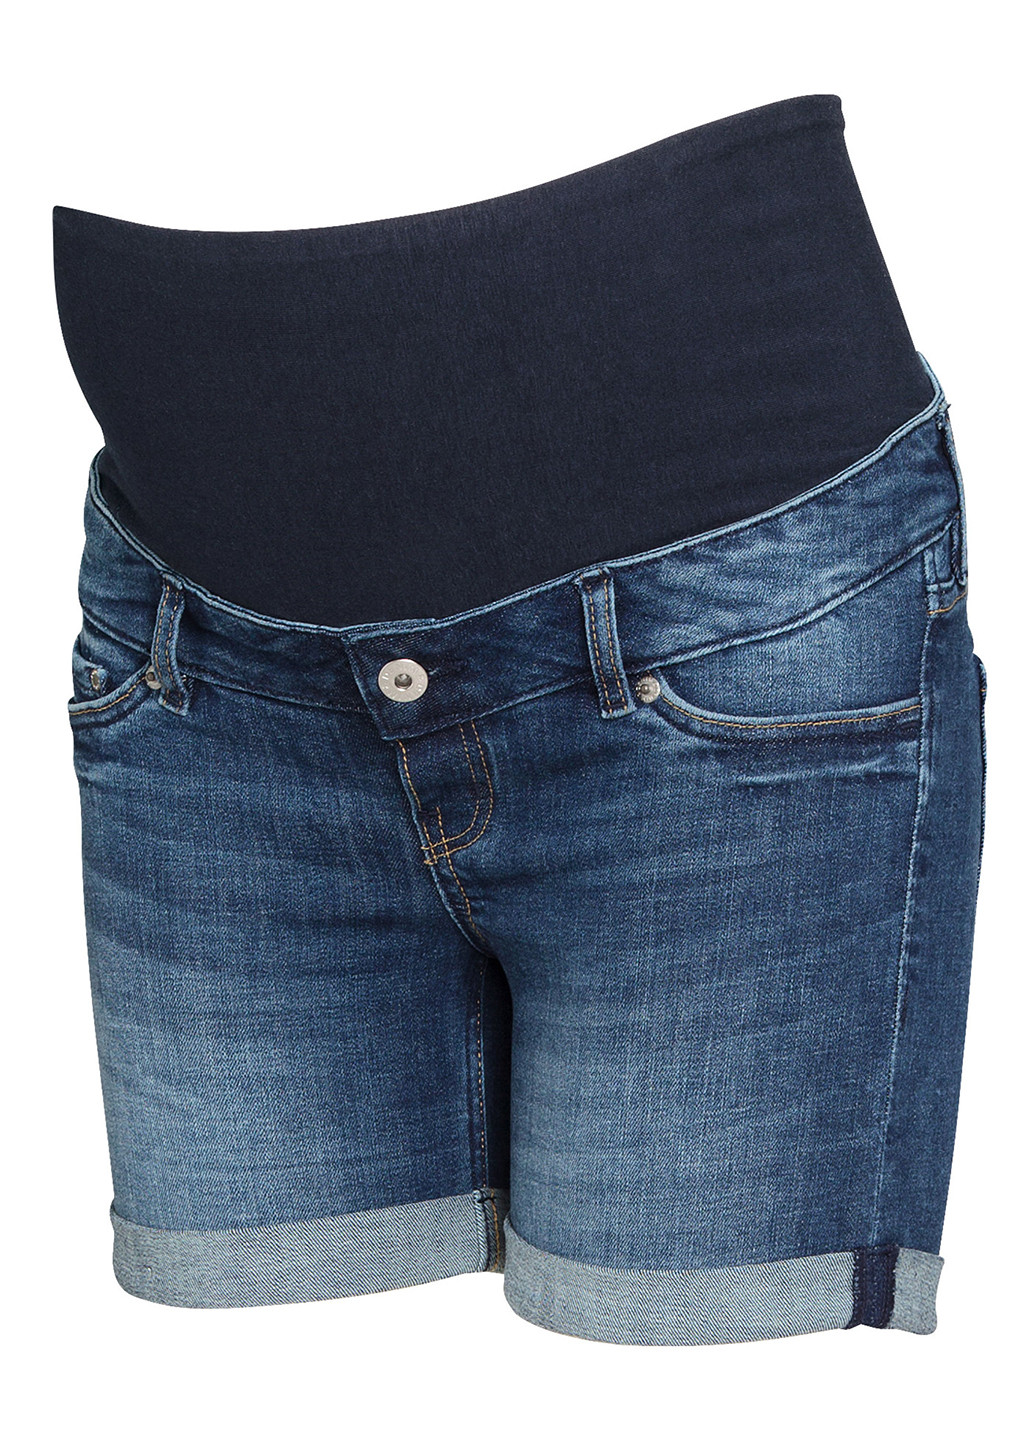 Шорты для беременных H&M градиенты синие джинсовые